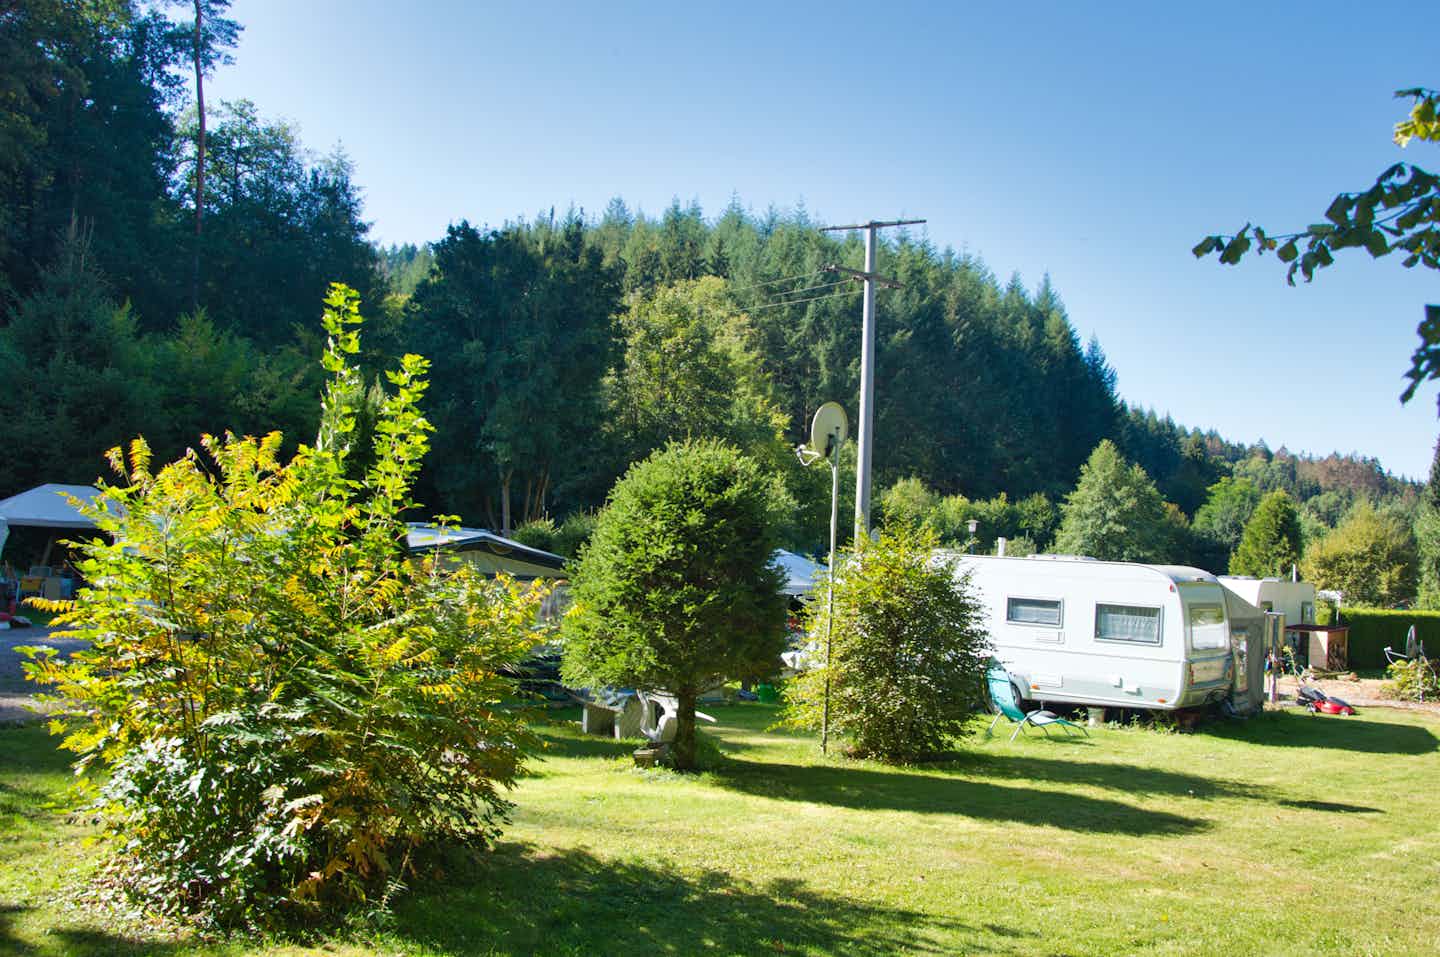 Camping Wisperpark